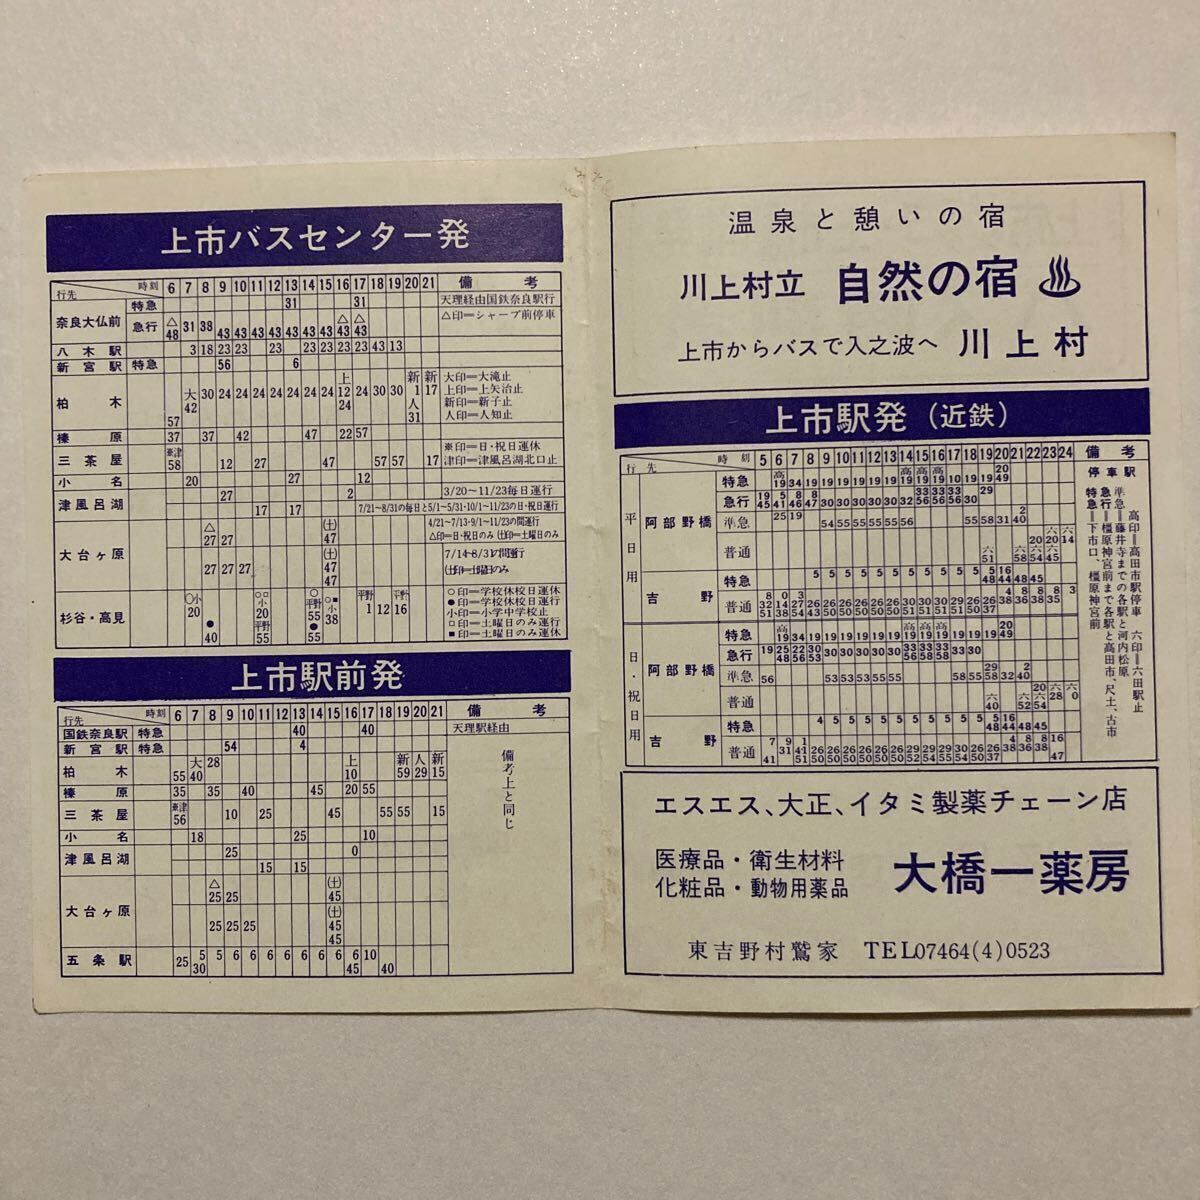 バス時刻表/1973年10月現在◆奈良交通/上市バスセンター発 大和上市駅前発/近鉄吉野線 大和上市発時刻表の画像2